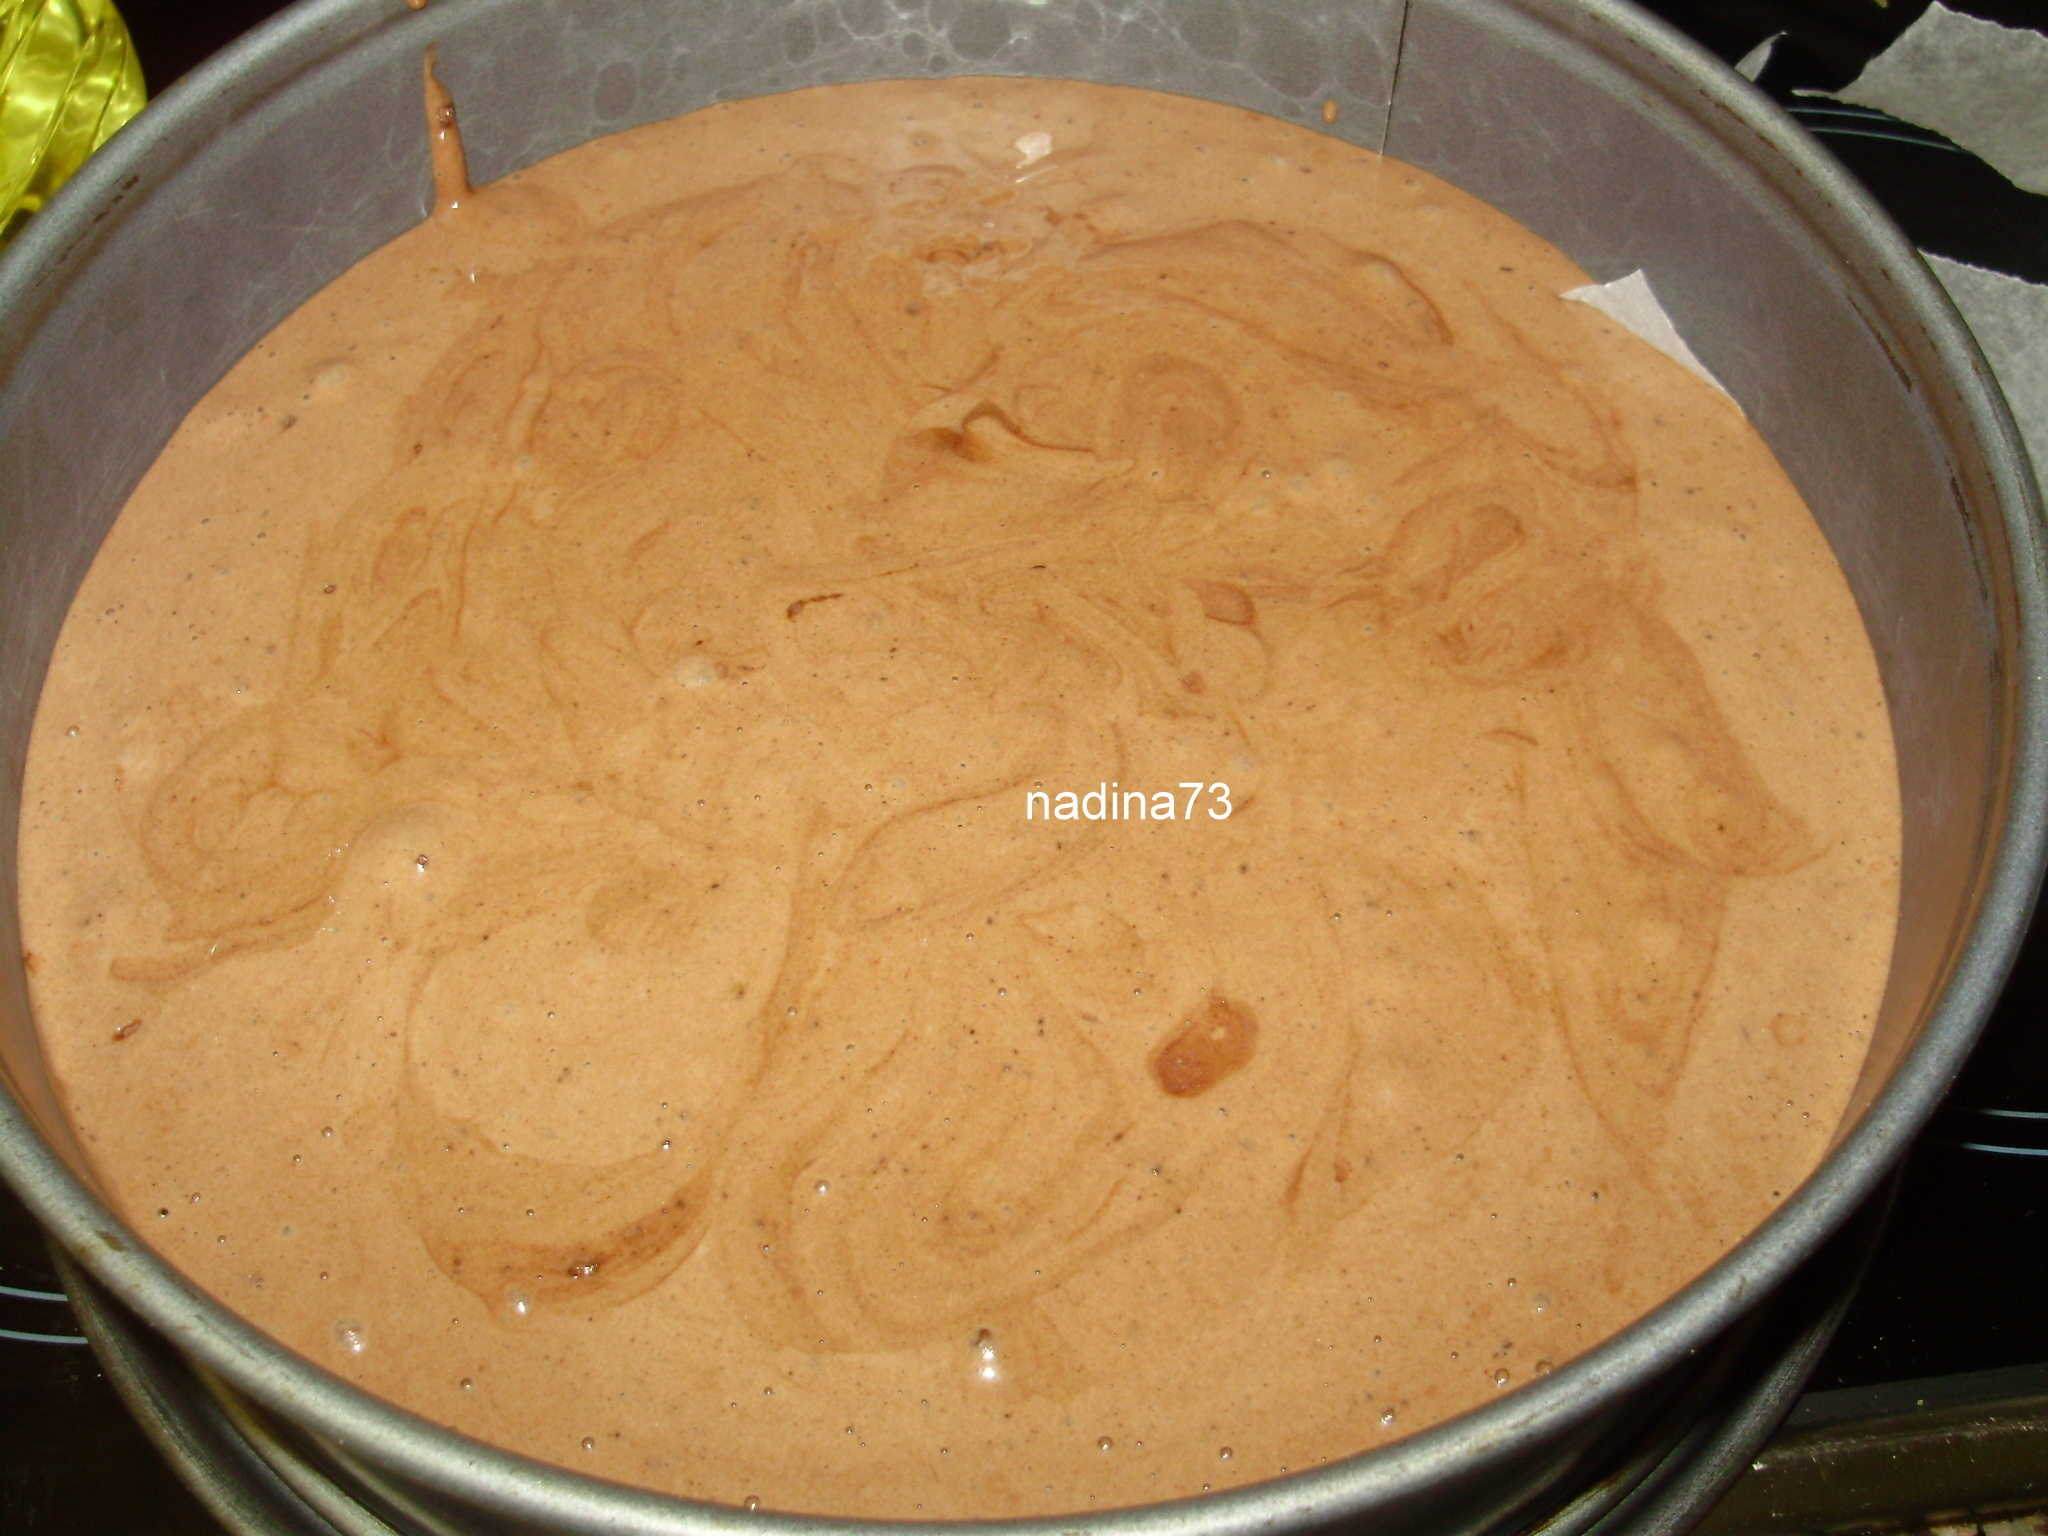 Tort de ciocolata cu mascarpone